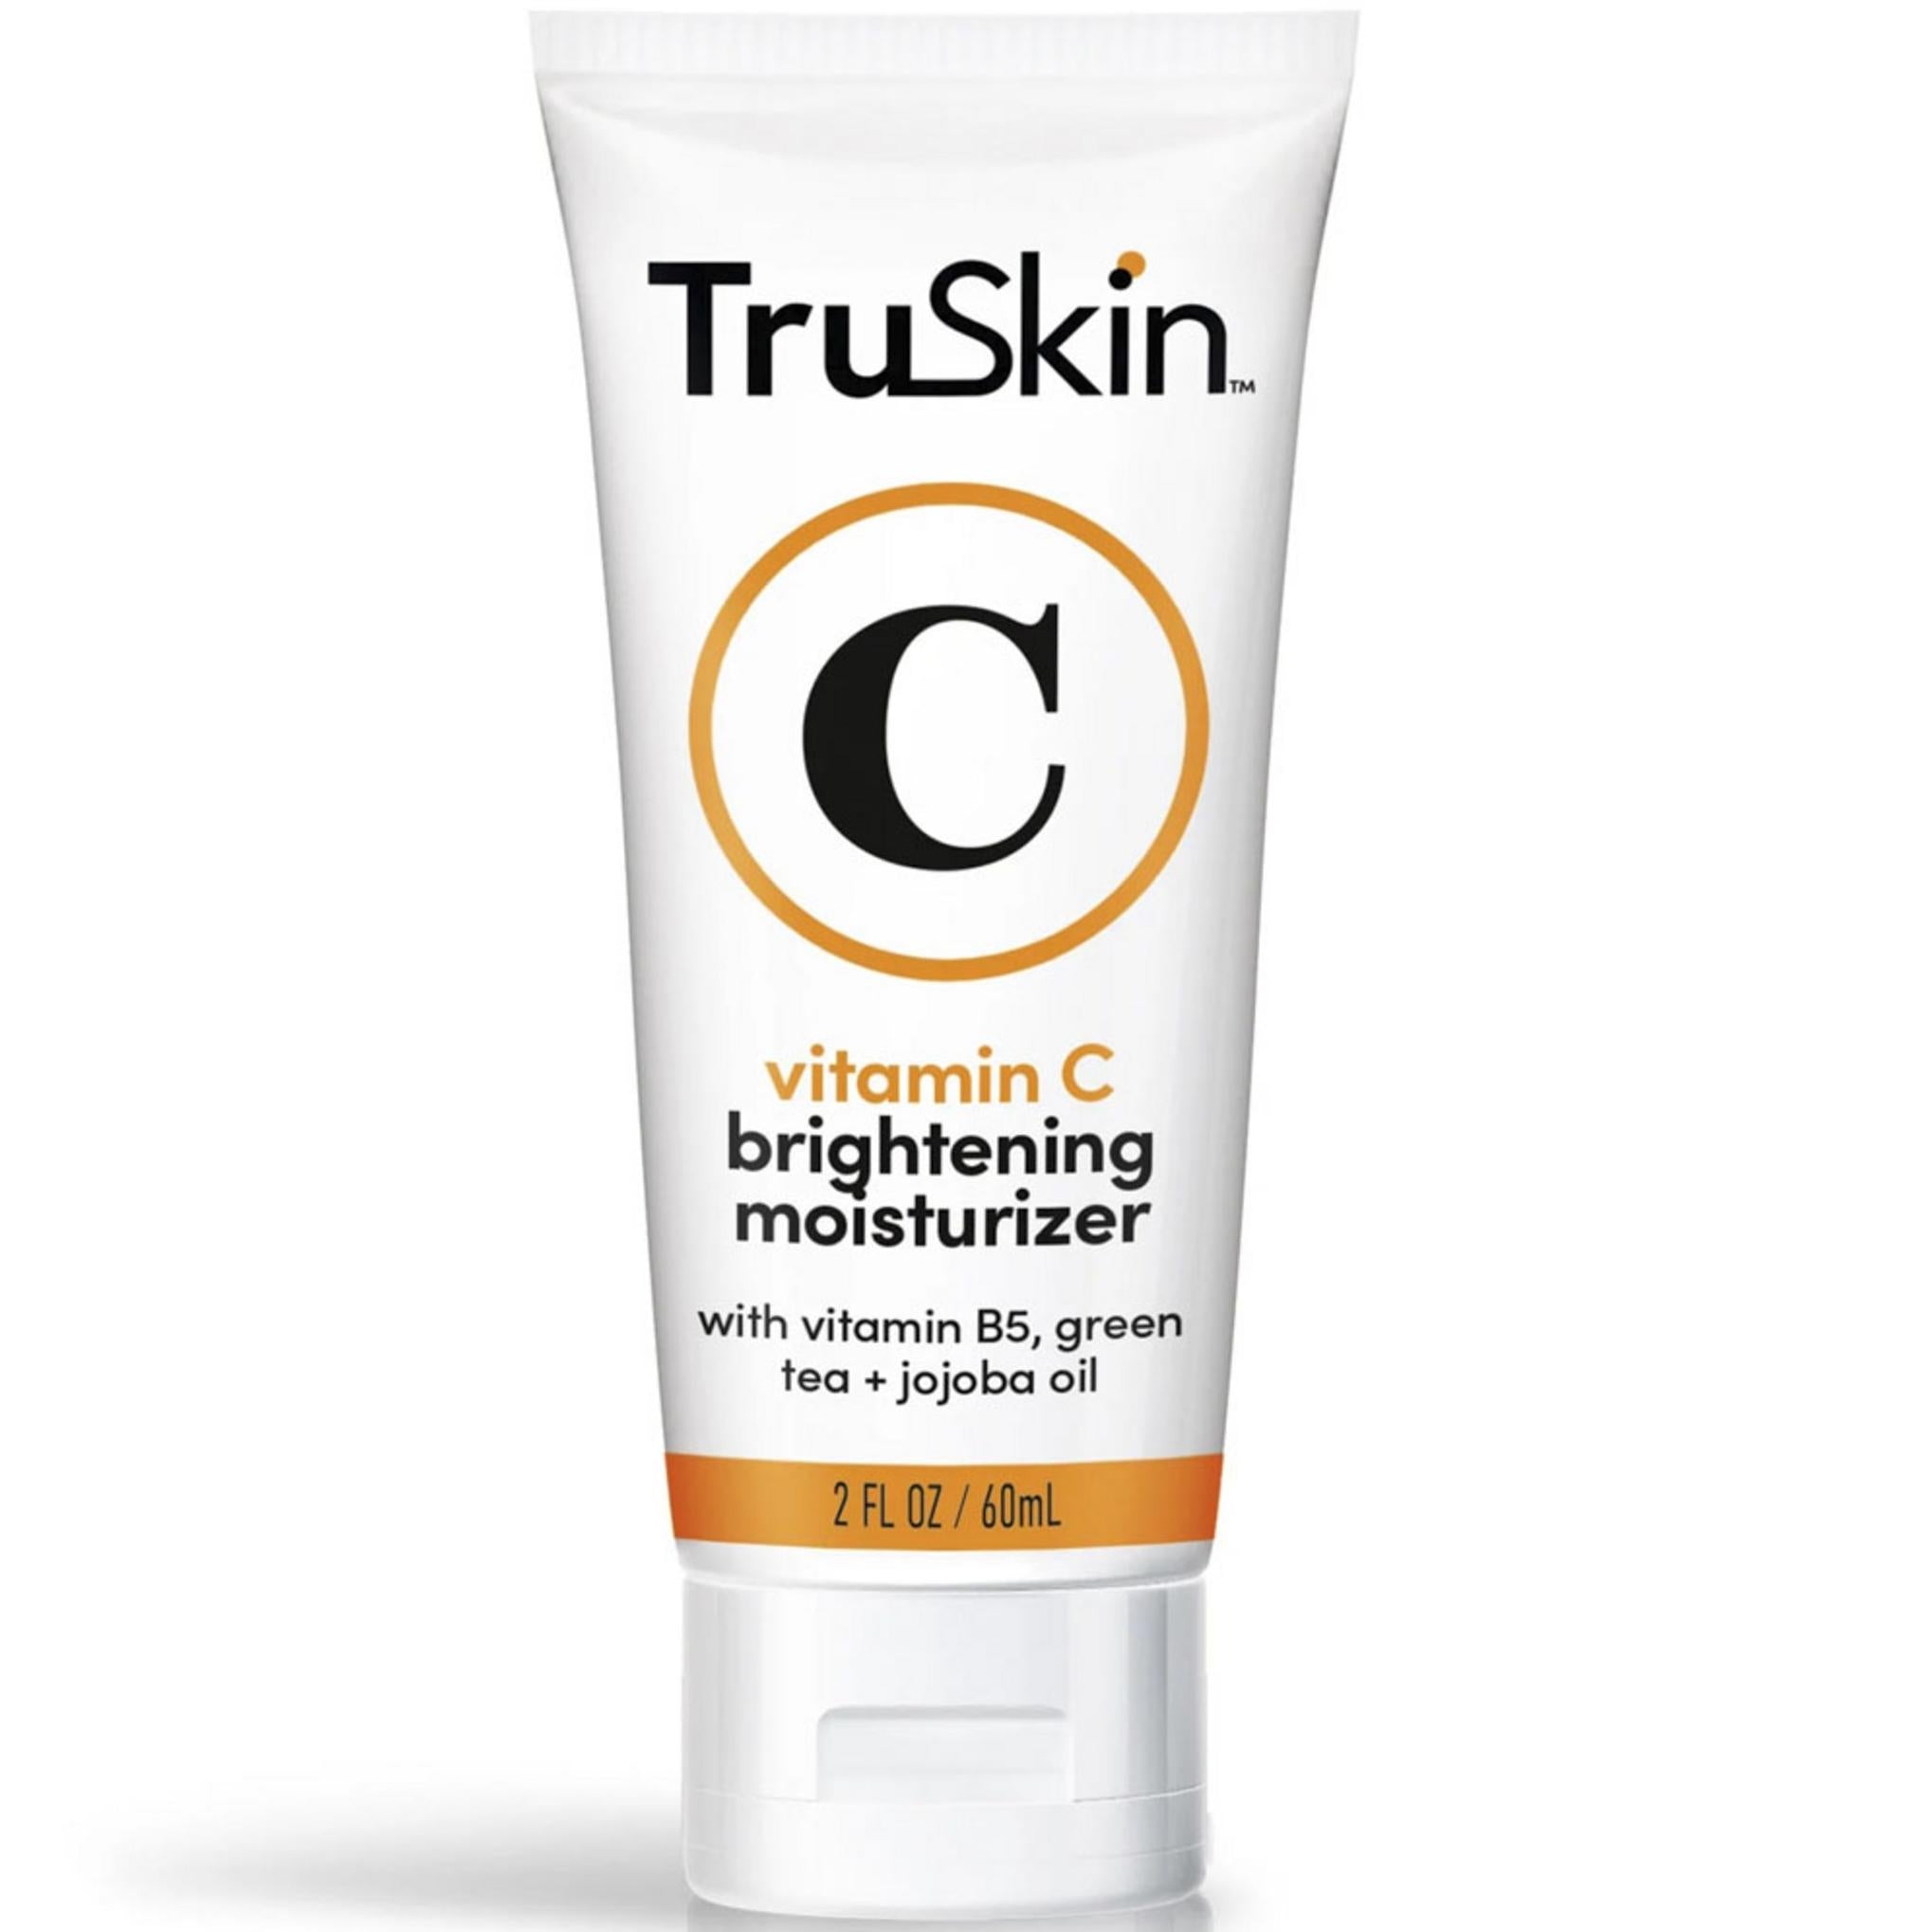 Truskin Vitamin C Brightening Moisturizer